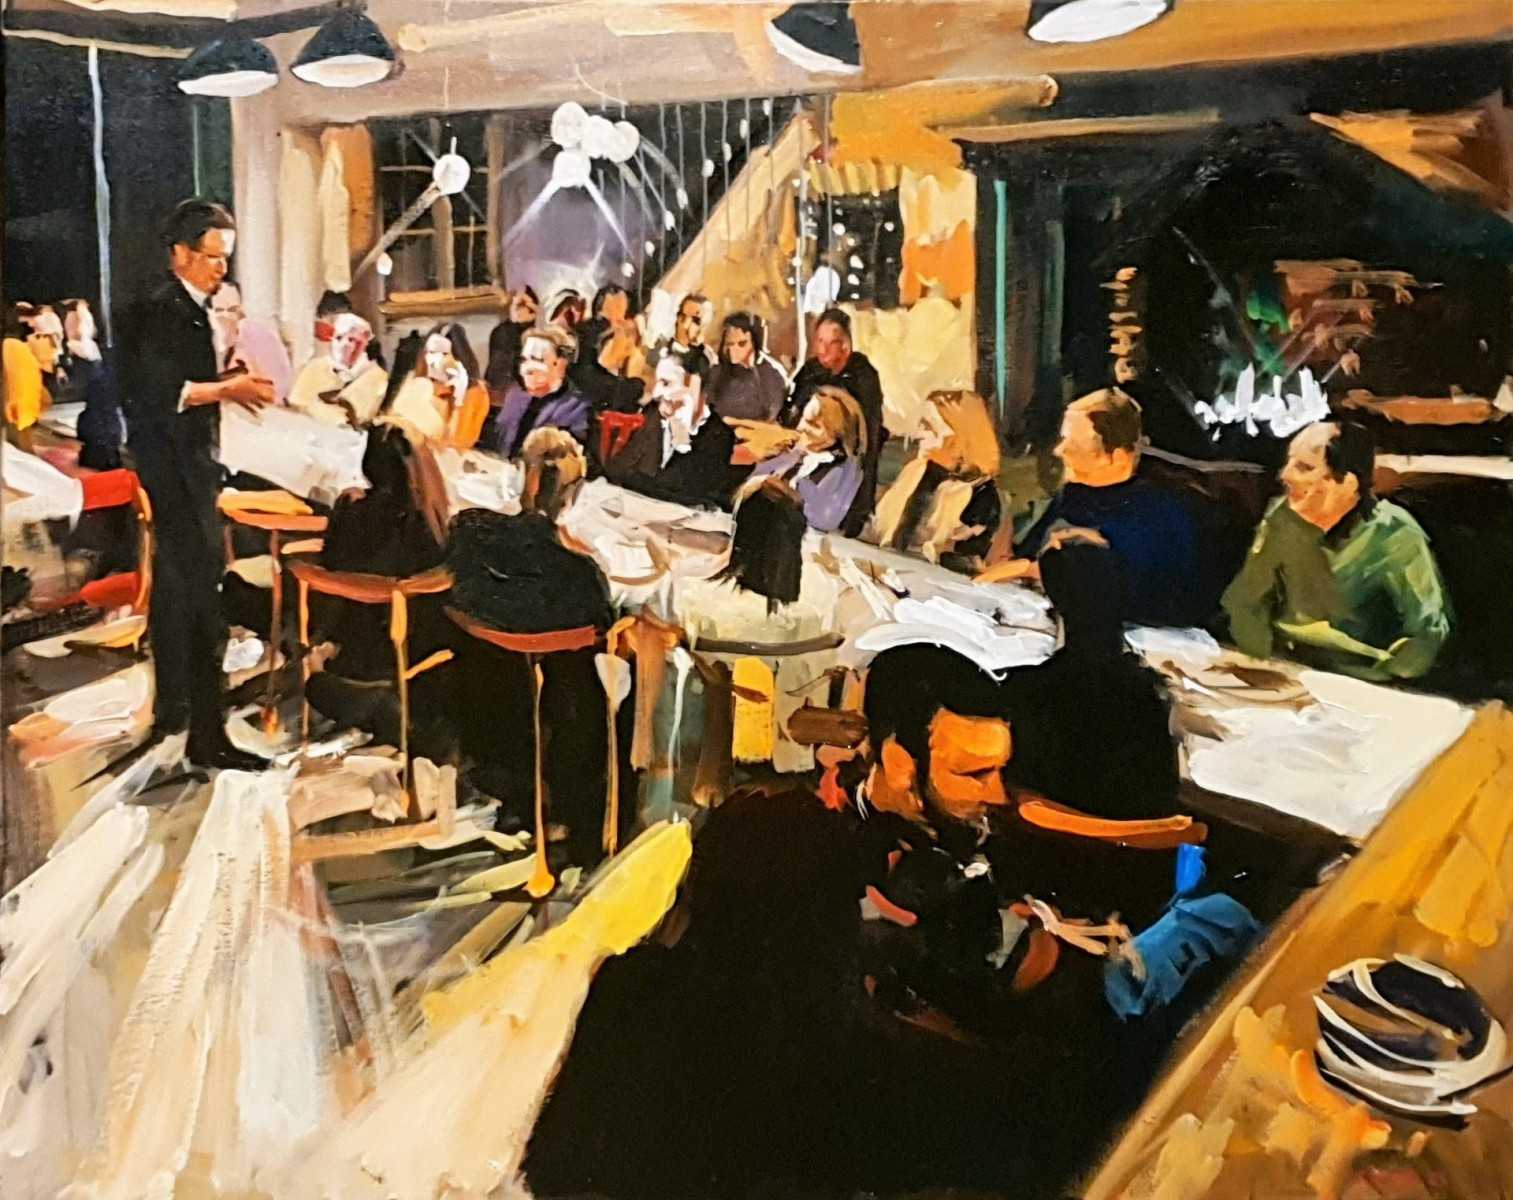 Duik in de culinaire wereld terwijl Rob Jacobs live schildert tijdens het gezellige etentje in Wortel, Antwerpen.